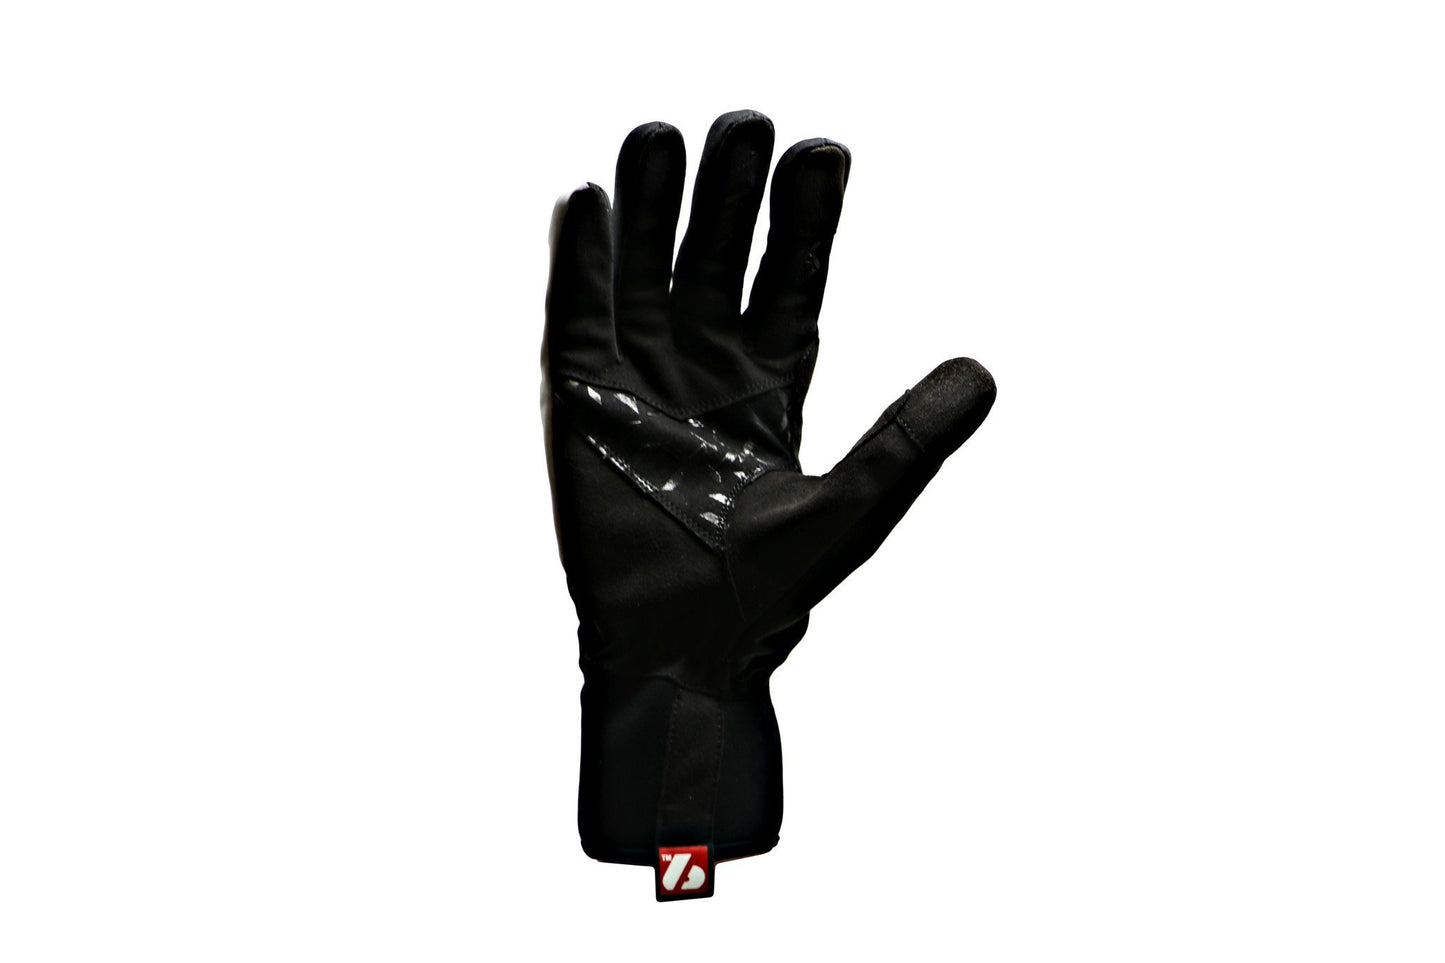 NBG-16 xc elite cross country ski winter gloves -20°c